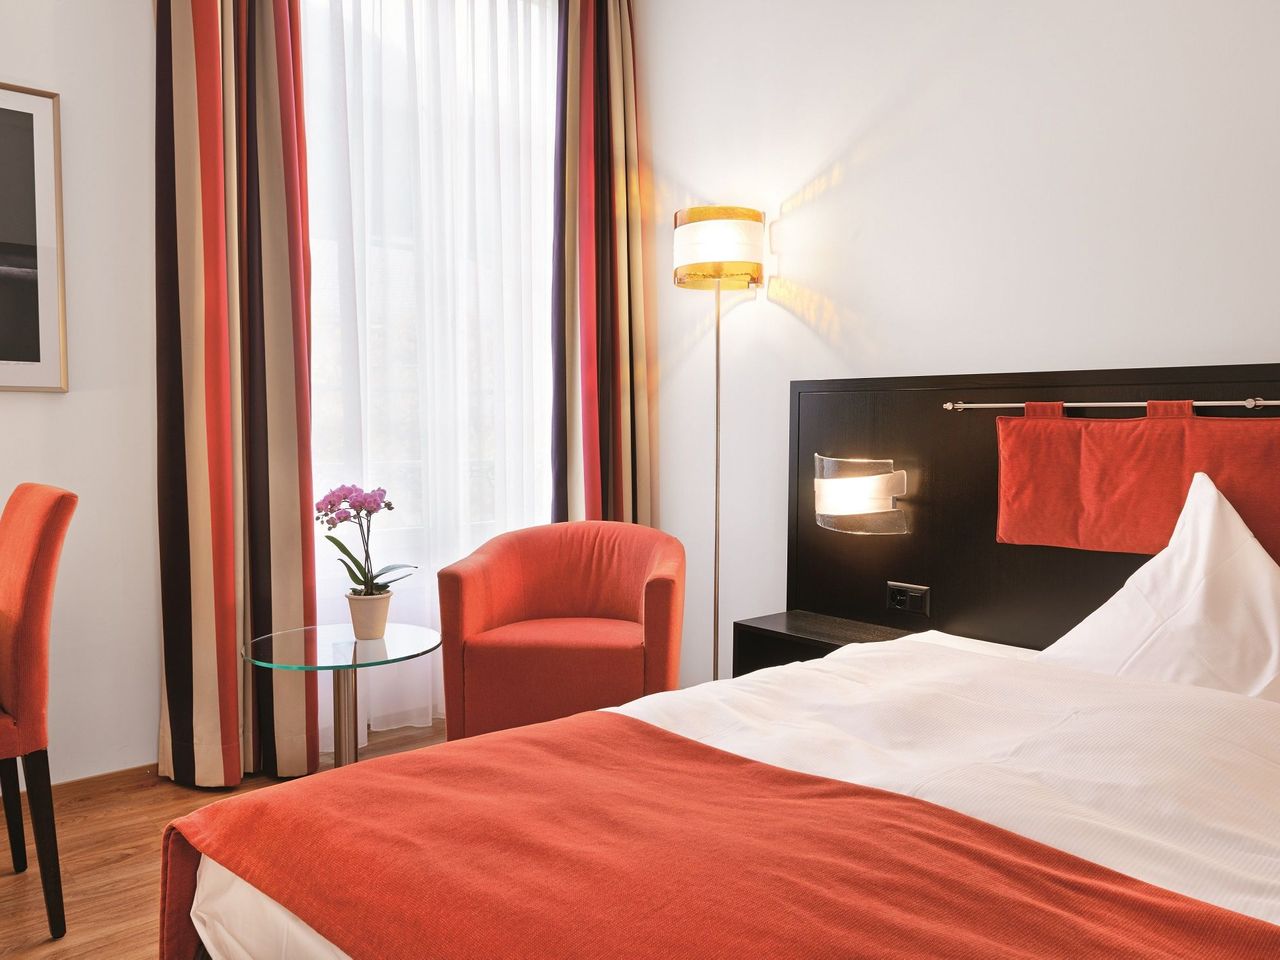 5 Tage Schweiz entdecken im Sorell Hotel Tamina